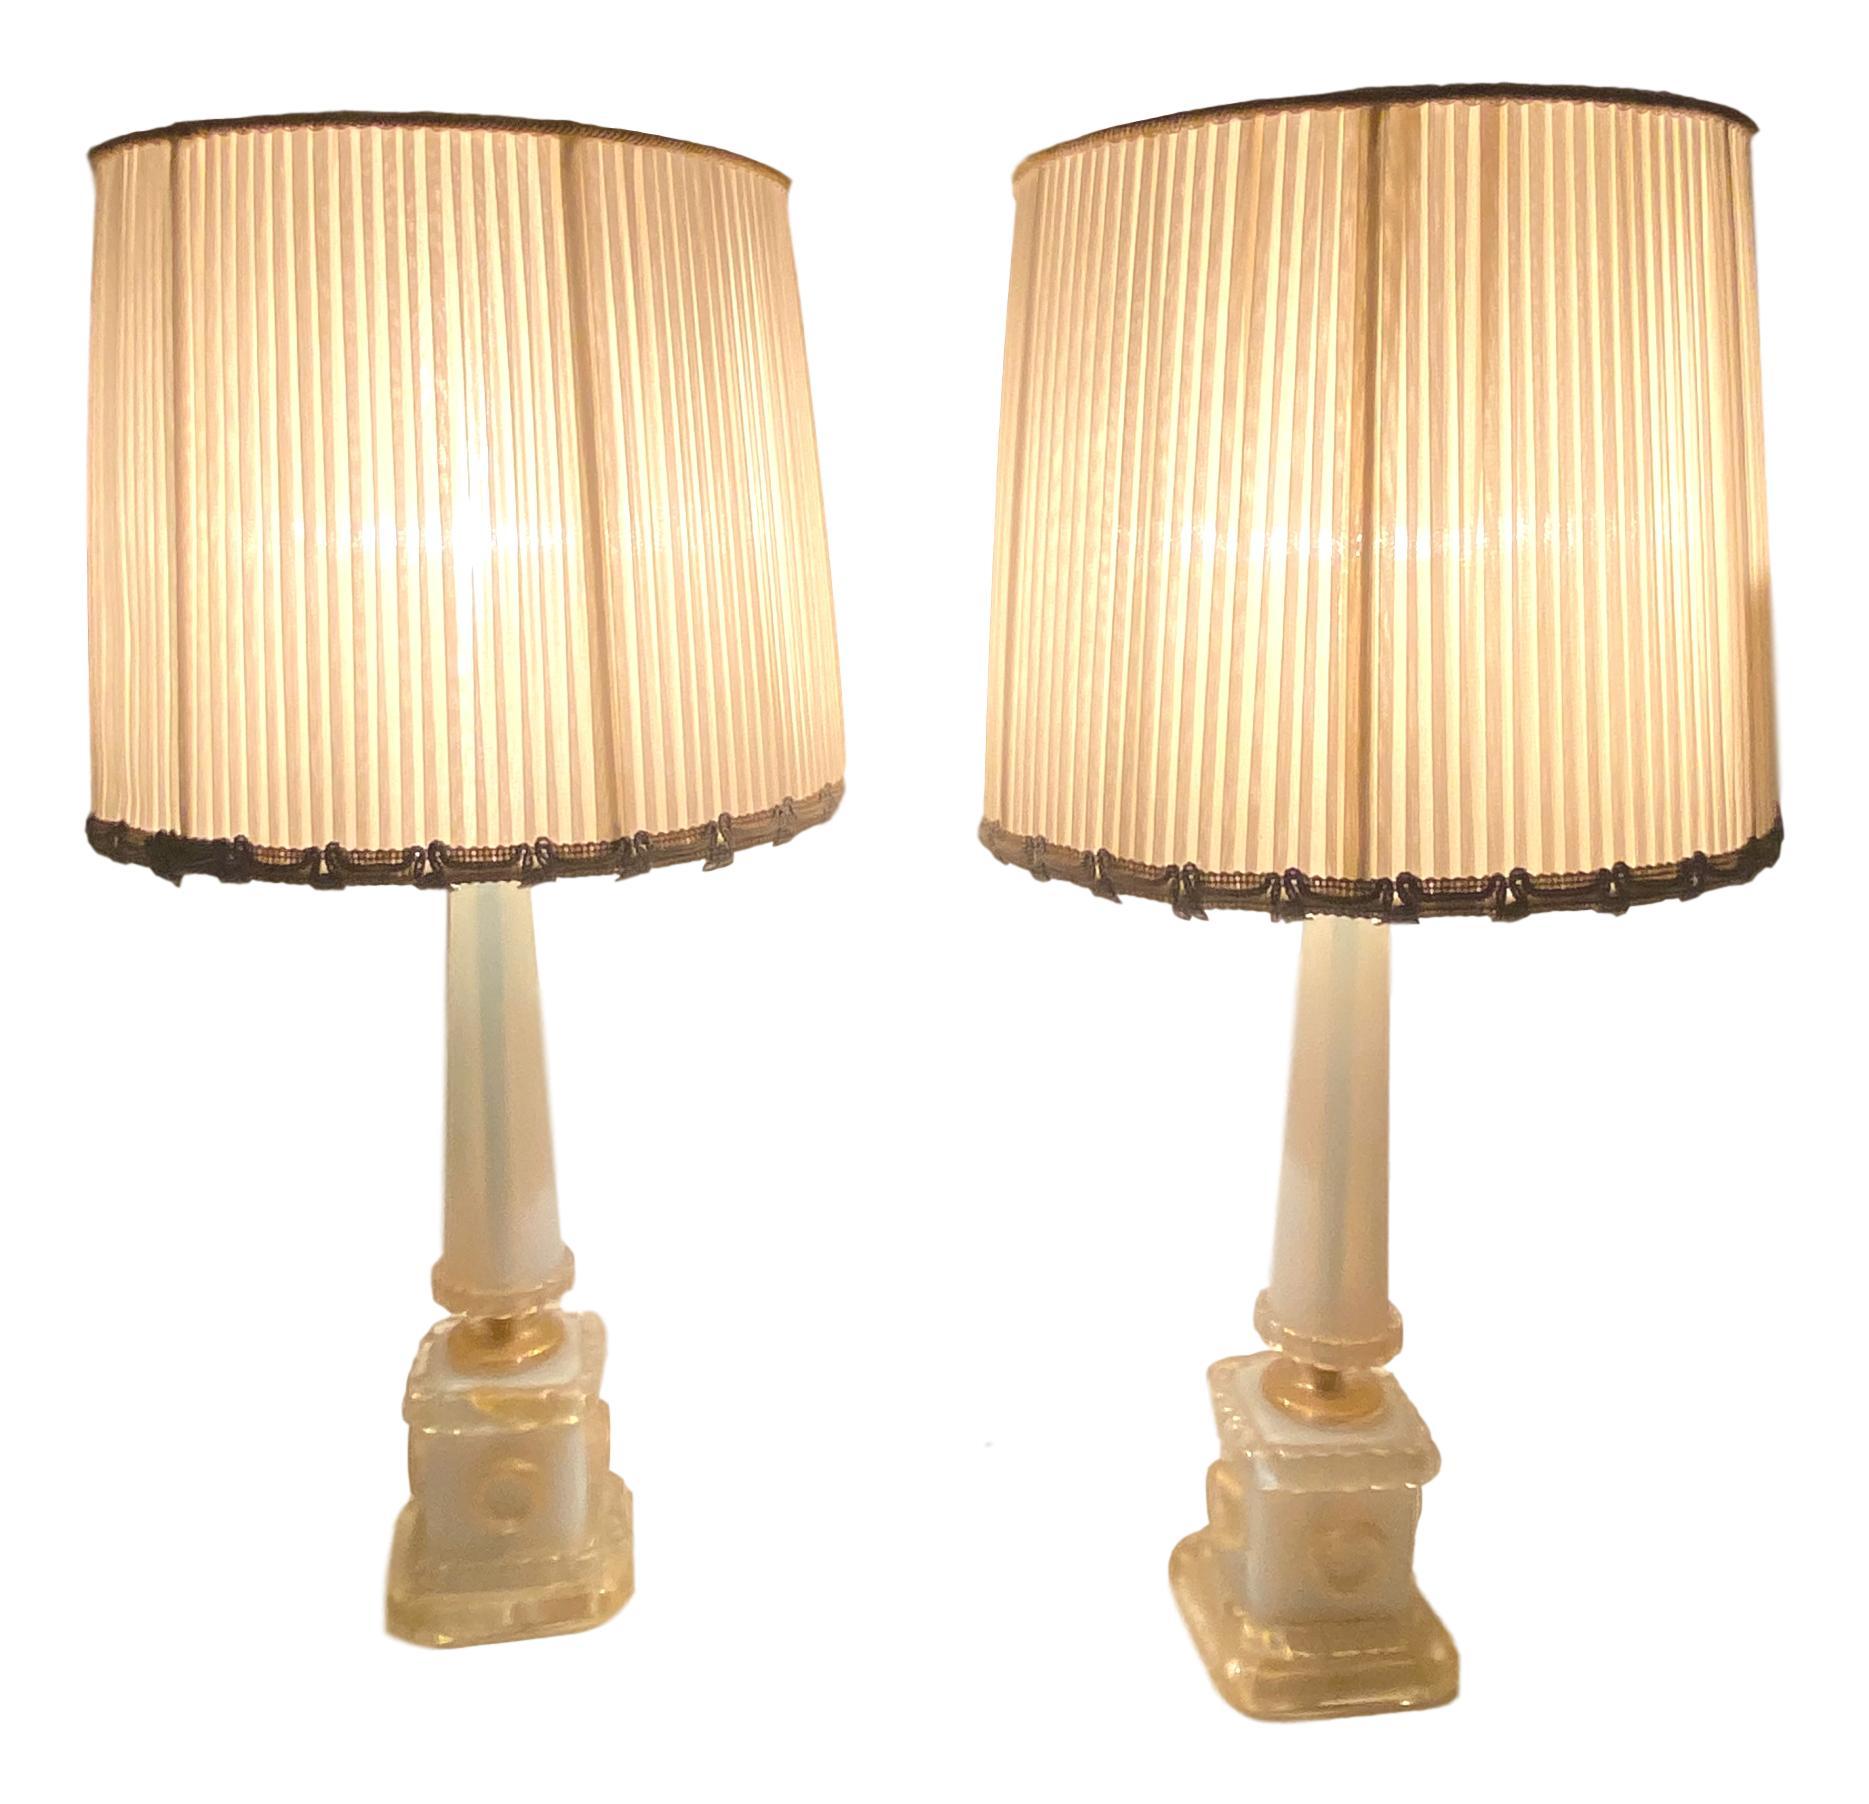 Magnifique paire de grandes lampes de table monumentales ou lampes d'appoint. En verre de Murano irisé et infusé d'or, fabriqué par Barovier&Toso Murano, Italie. Chaque lampe nécessite une ampoule européenne E27 / 110 Volt Edison, jusqu'à 60 watts.